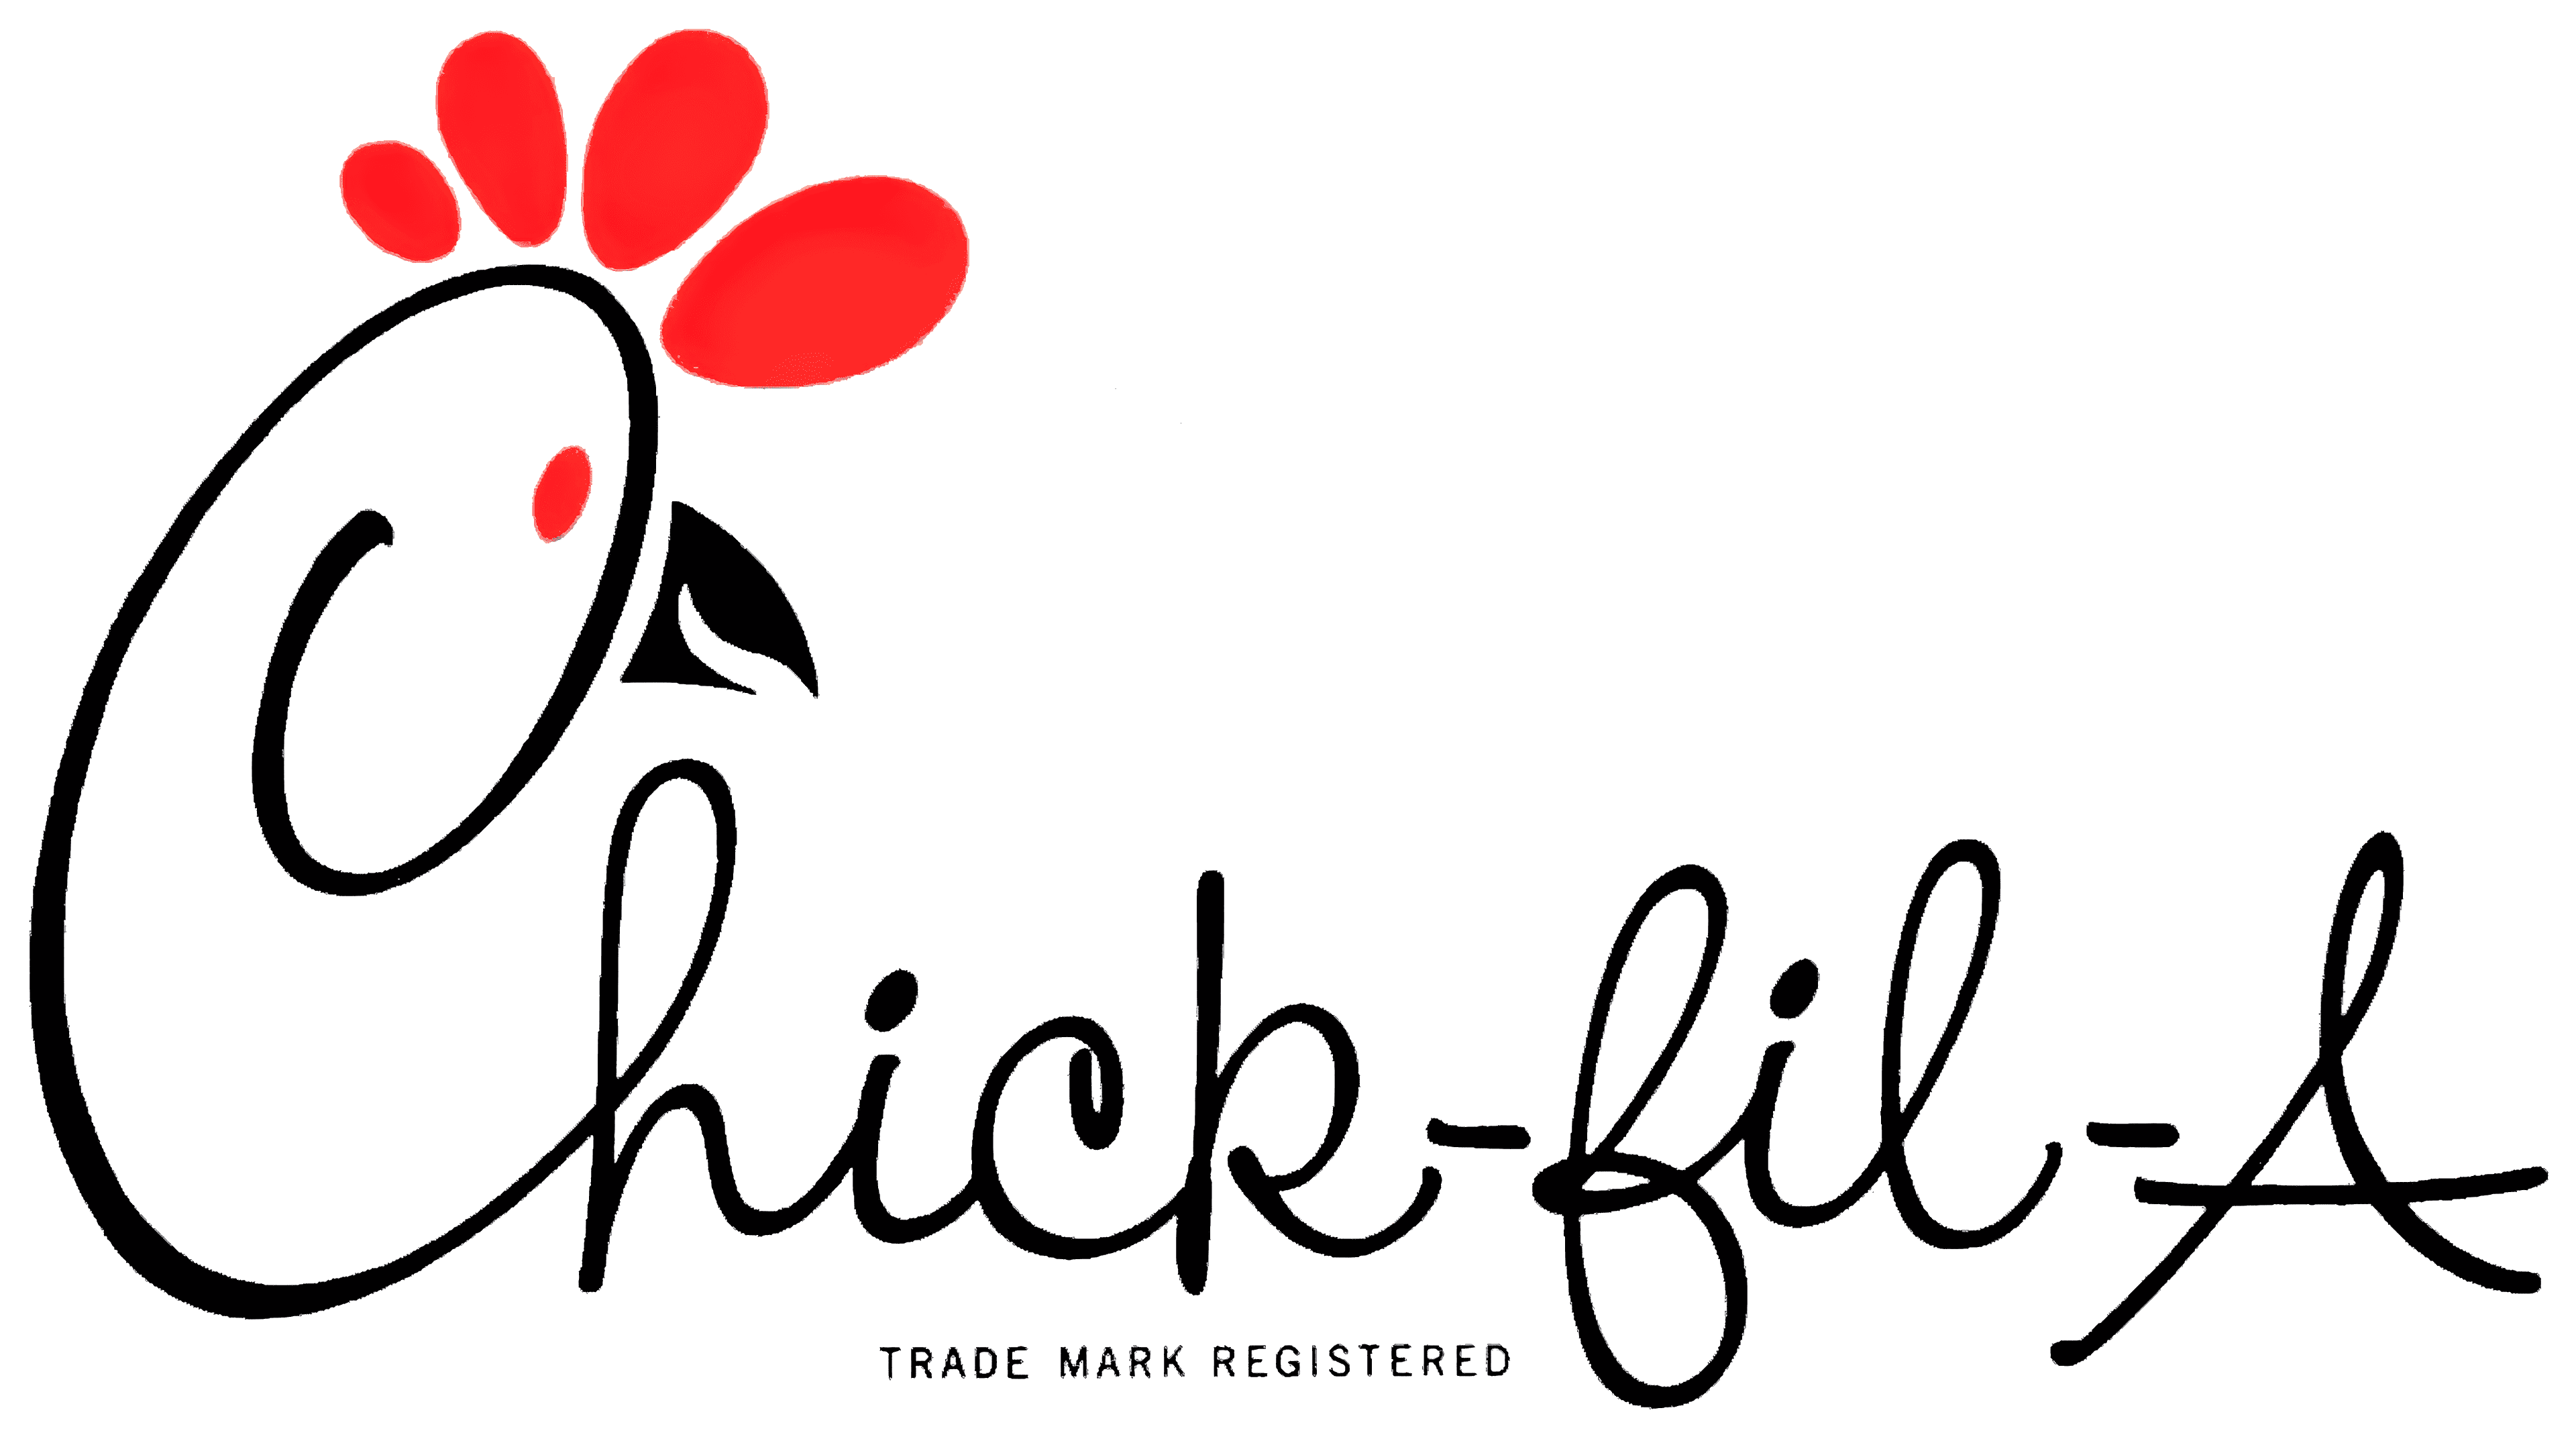 chick fil a logo png